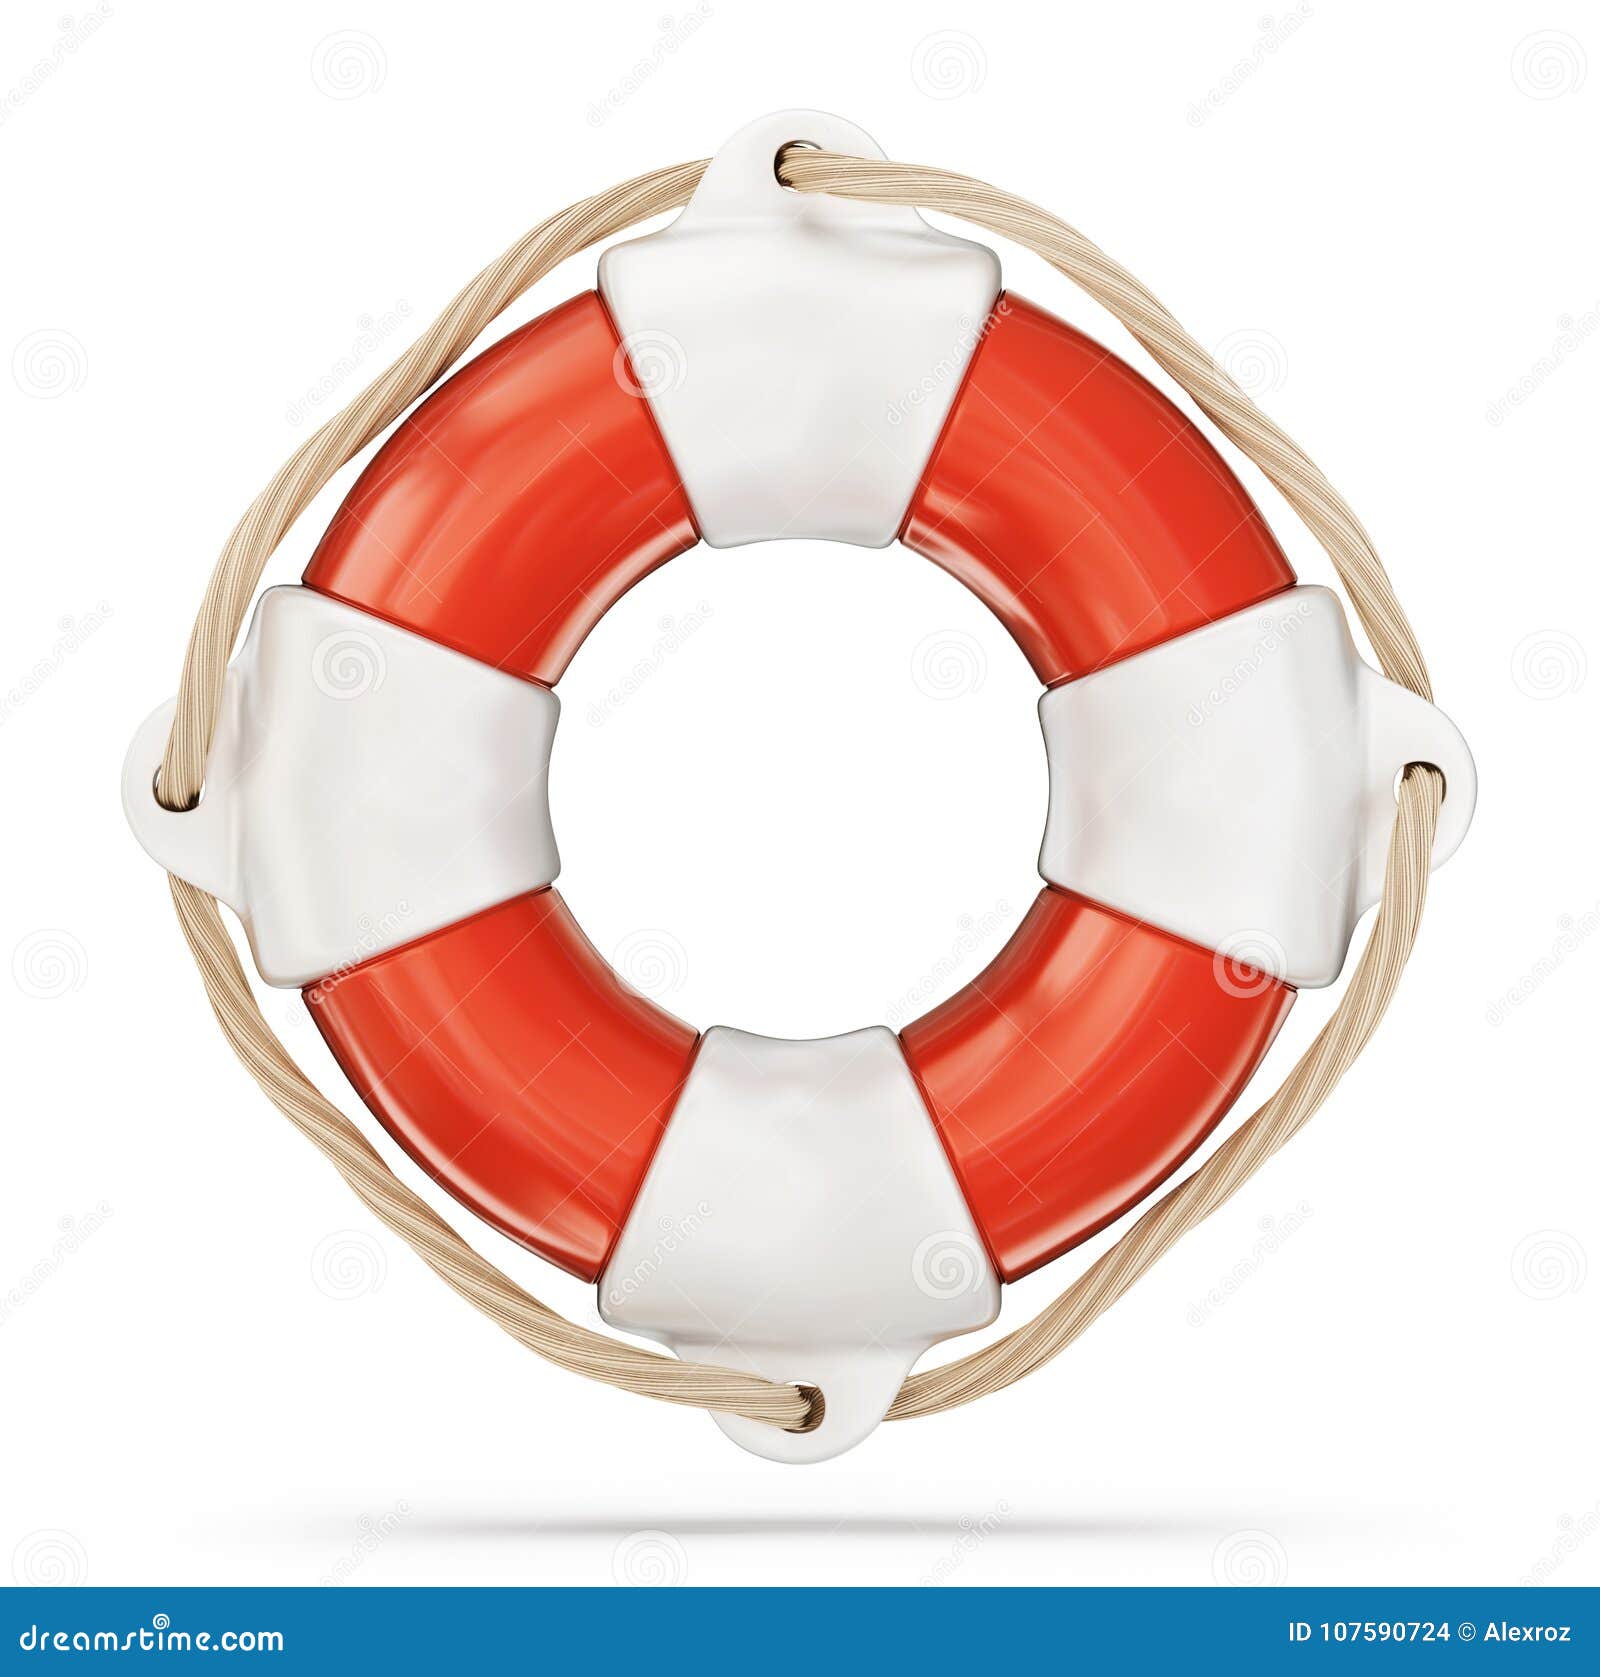 Lifebuoy stock illustration. Illustration of icon, circle - 107590724